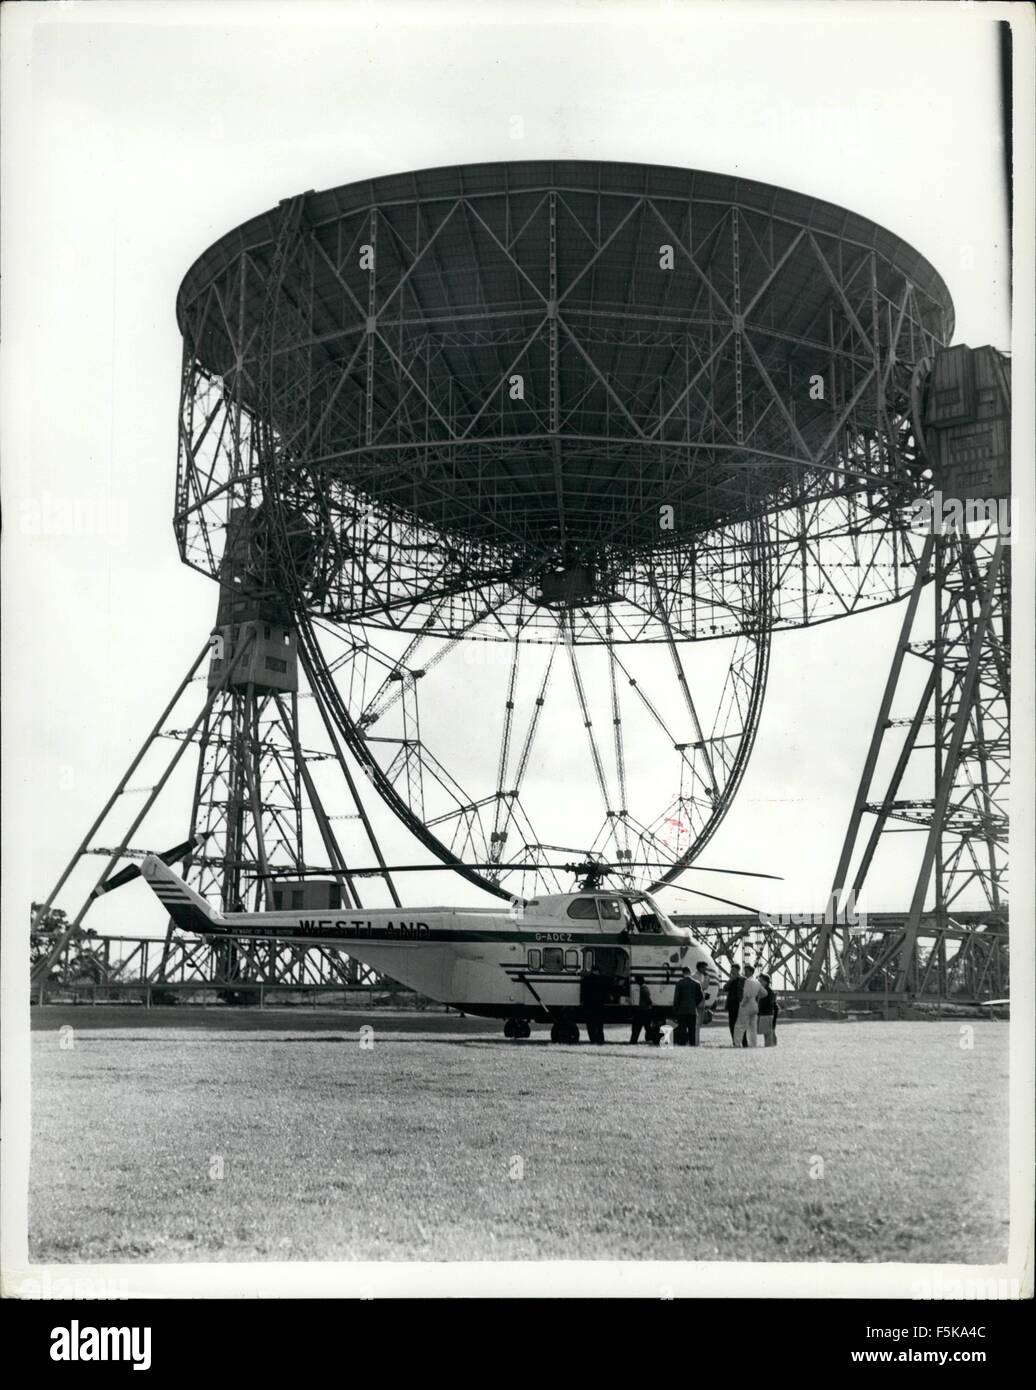 1968 - Hubschrauber lösen ist Knotty Job des entfernen Sender von Schüssel der Teleskop AT Jordell Bank: A Westland Hubschrauber wurde bei Jordell Bank heute Nachmittag für die knifflige Aufgabe, einen radikale Sender aus der Schüssel des riesigen Teleskops dort verwendet. Normalerweise, die Entfernung von der 10-Kilowatt - Sender von den USA ausgeliehen, für die Versteigerung von amerikanischen Satelliten-Signale erfordert würde die alimenting des Teleskops einer Schüssel jedoch den Einsatz eines Hubschraubers als eine improvisierte '' Himmel Buch '' erleichtert die Arbeit. Foto zeigt die Westland Hubschrauber ist vor der riesigen Telesc gesehen. Stockfoto